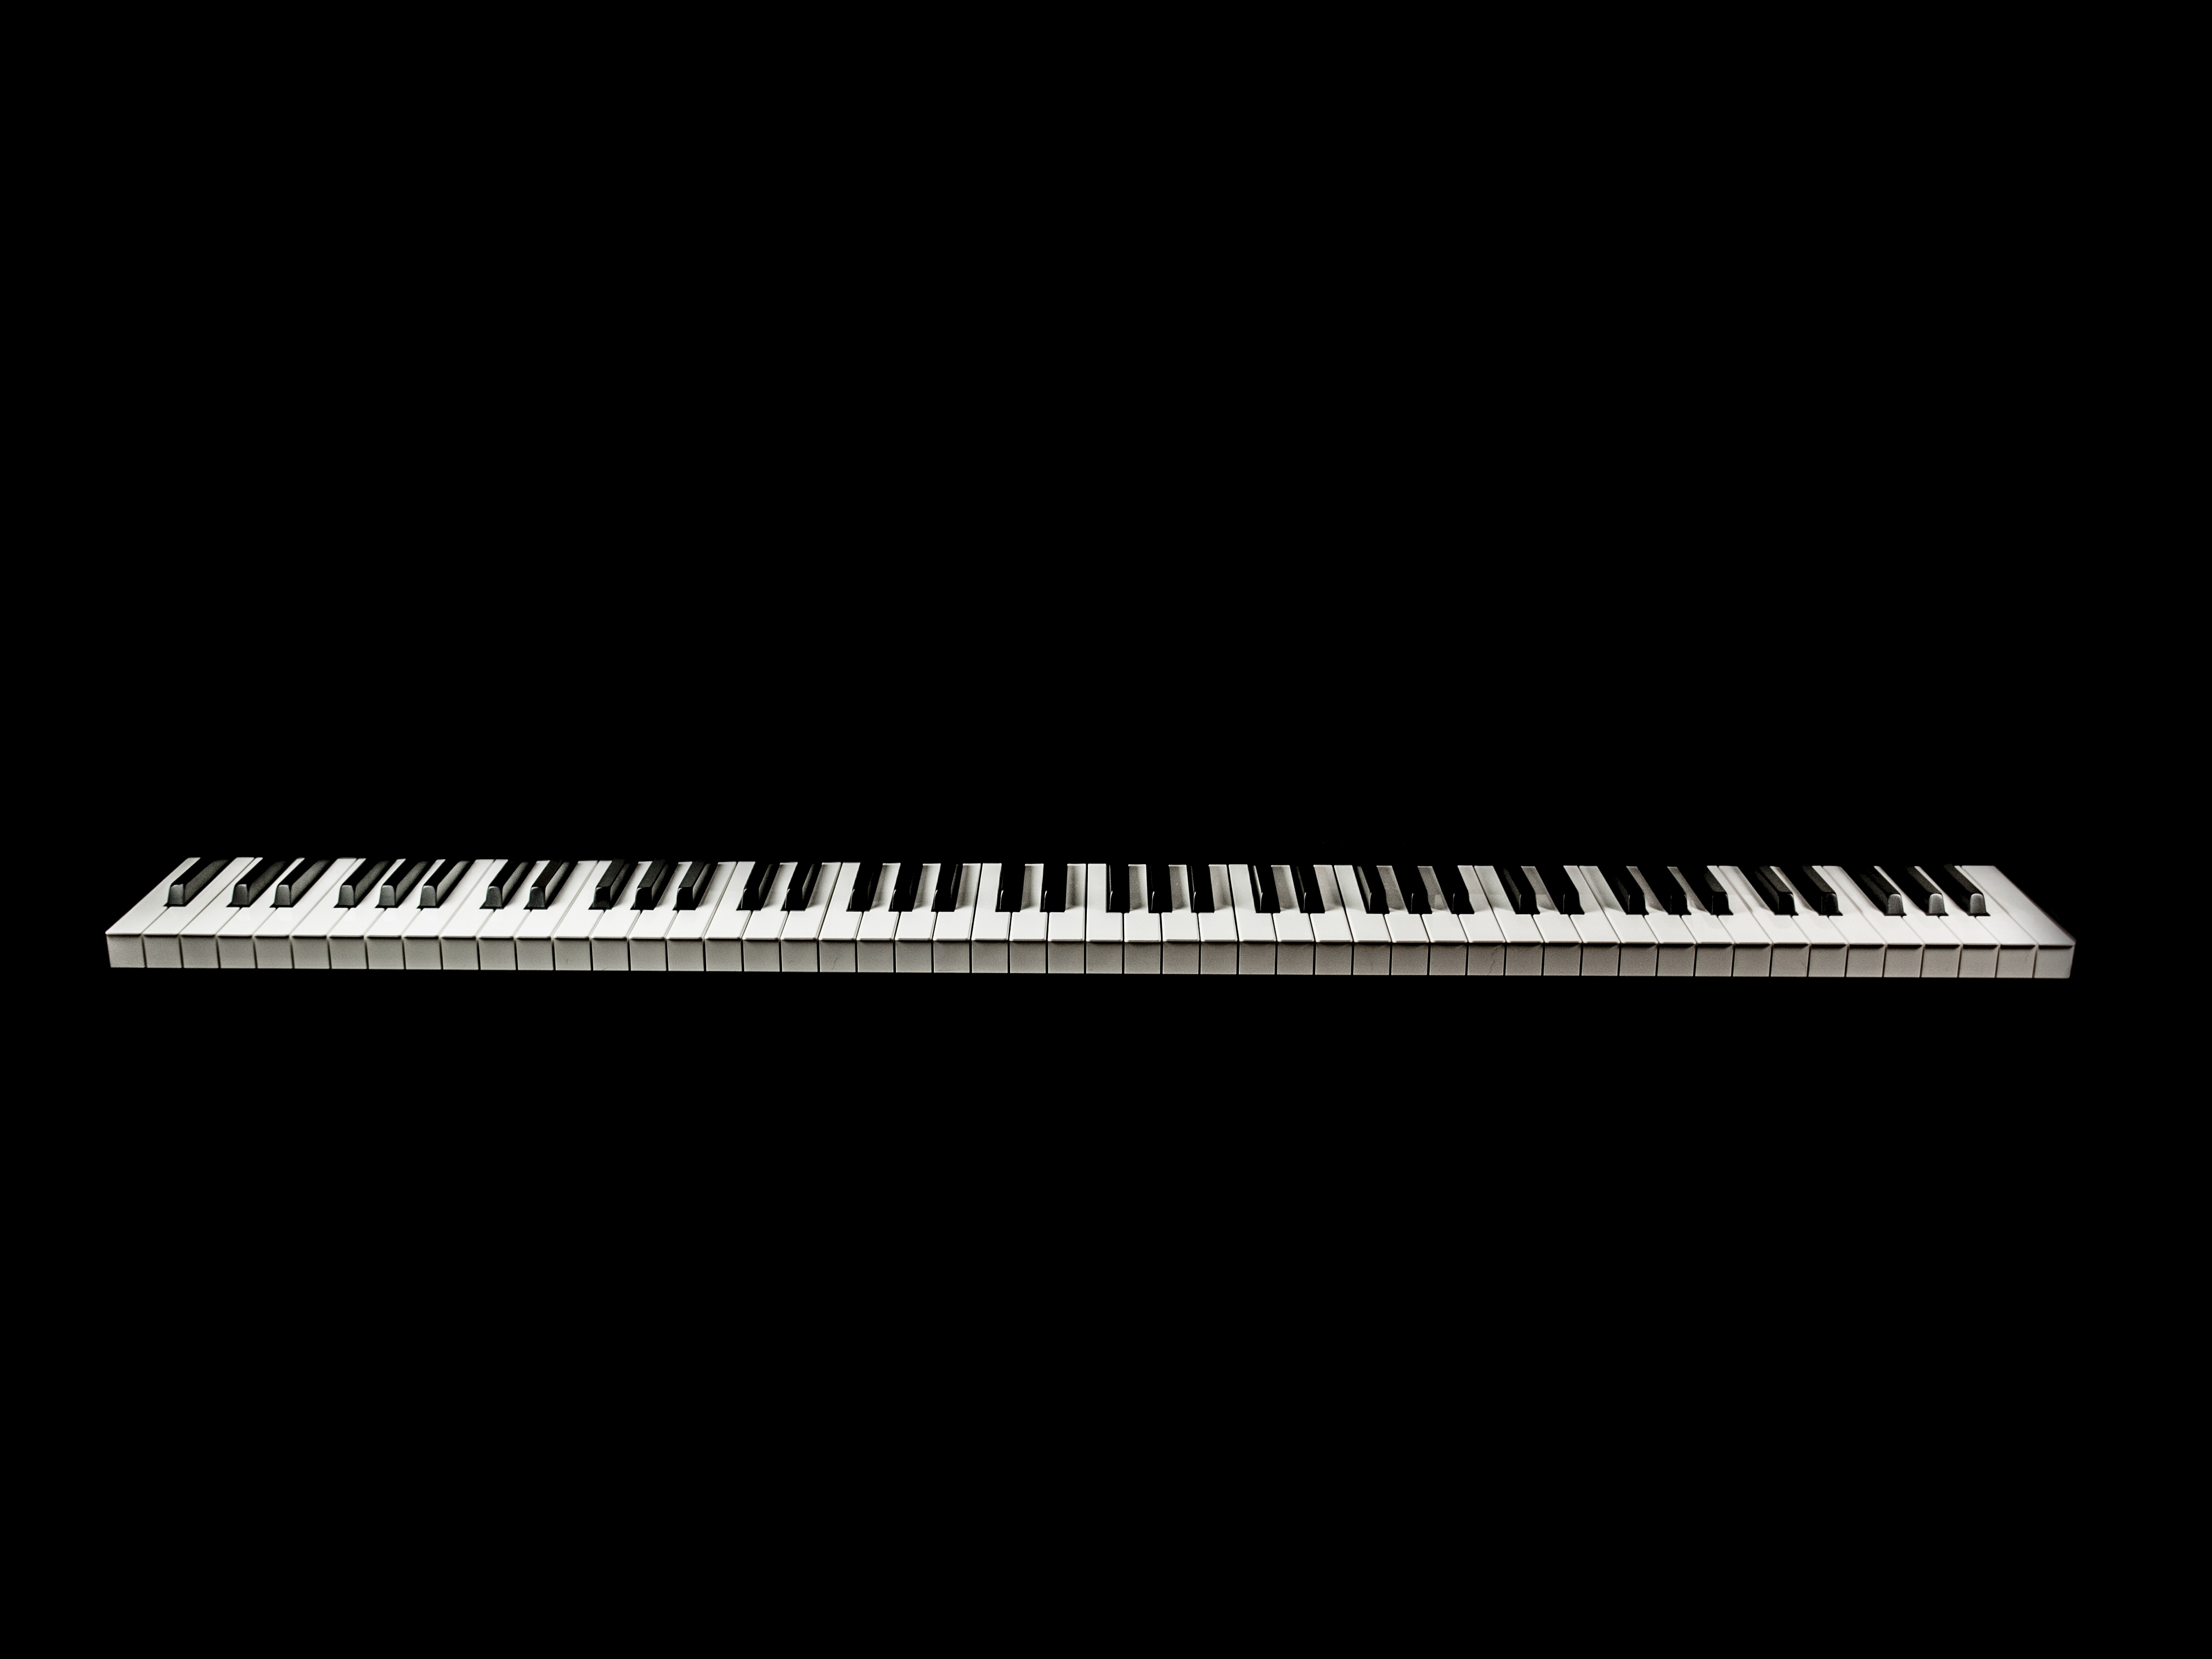 piano, music, minimalism, bw, chb, keys